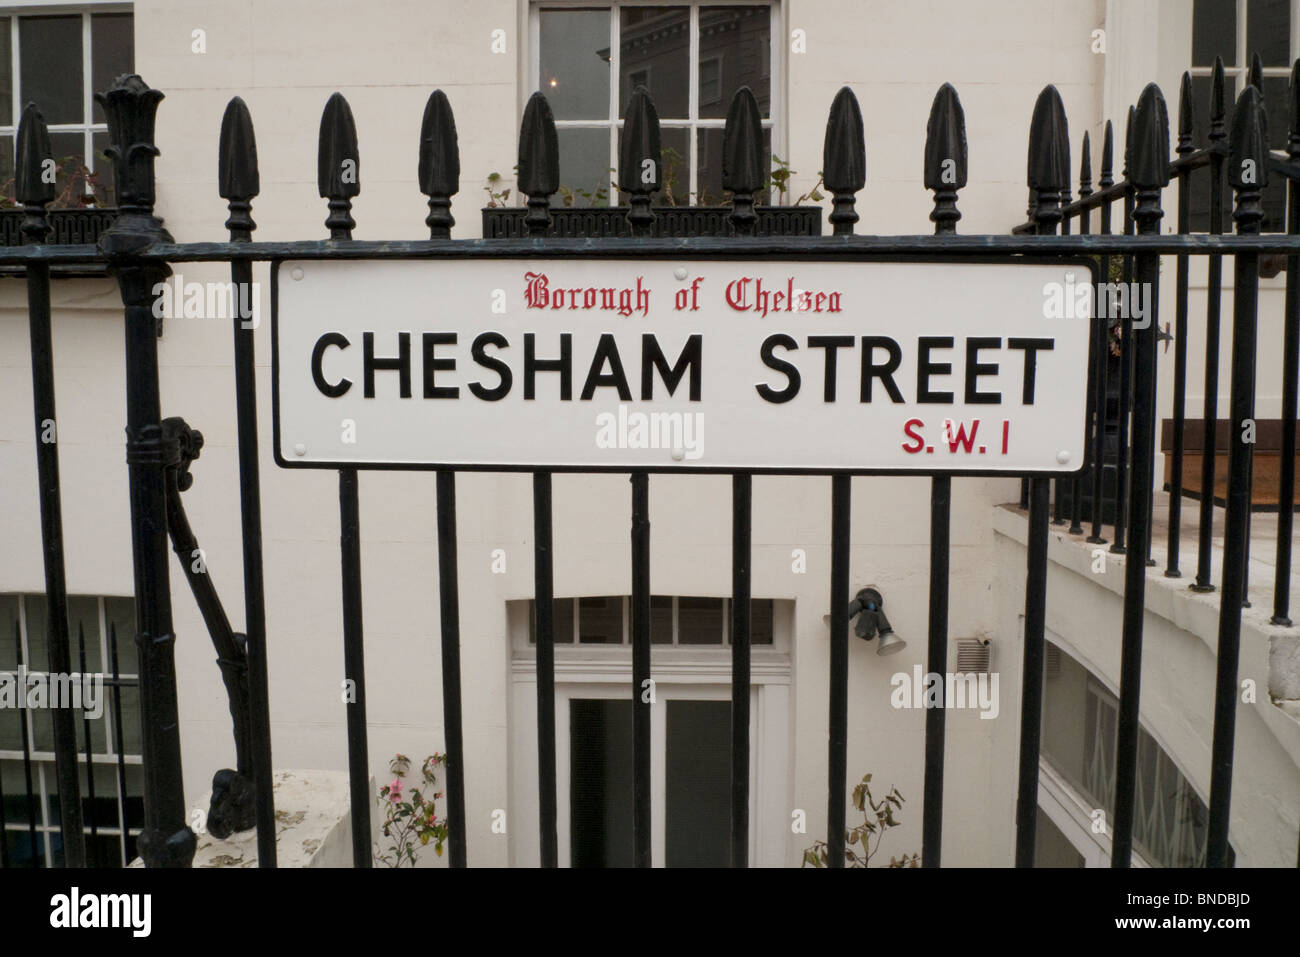 Chesham Street strada segno appeso su una ringhiera nero nel quartiere di Chelsea, Londra, Inghilterra, Regno Unito Foto Stock